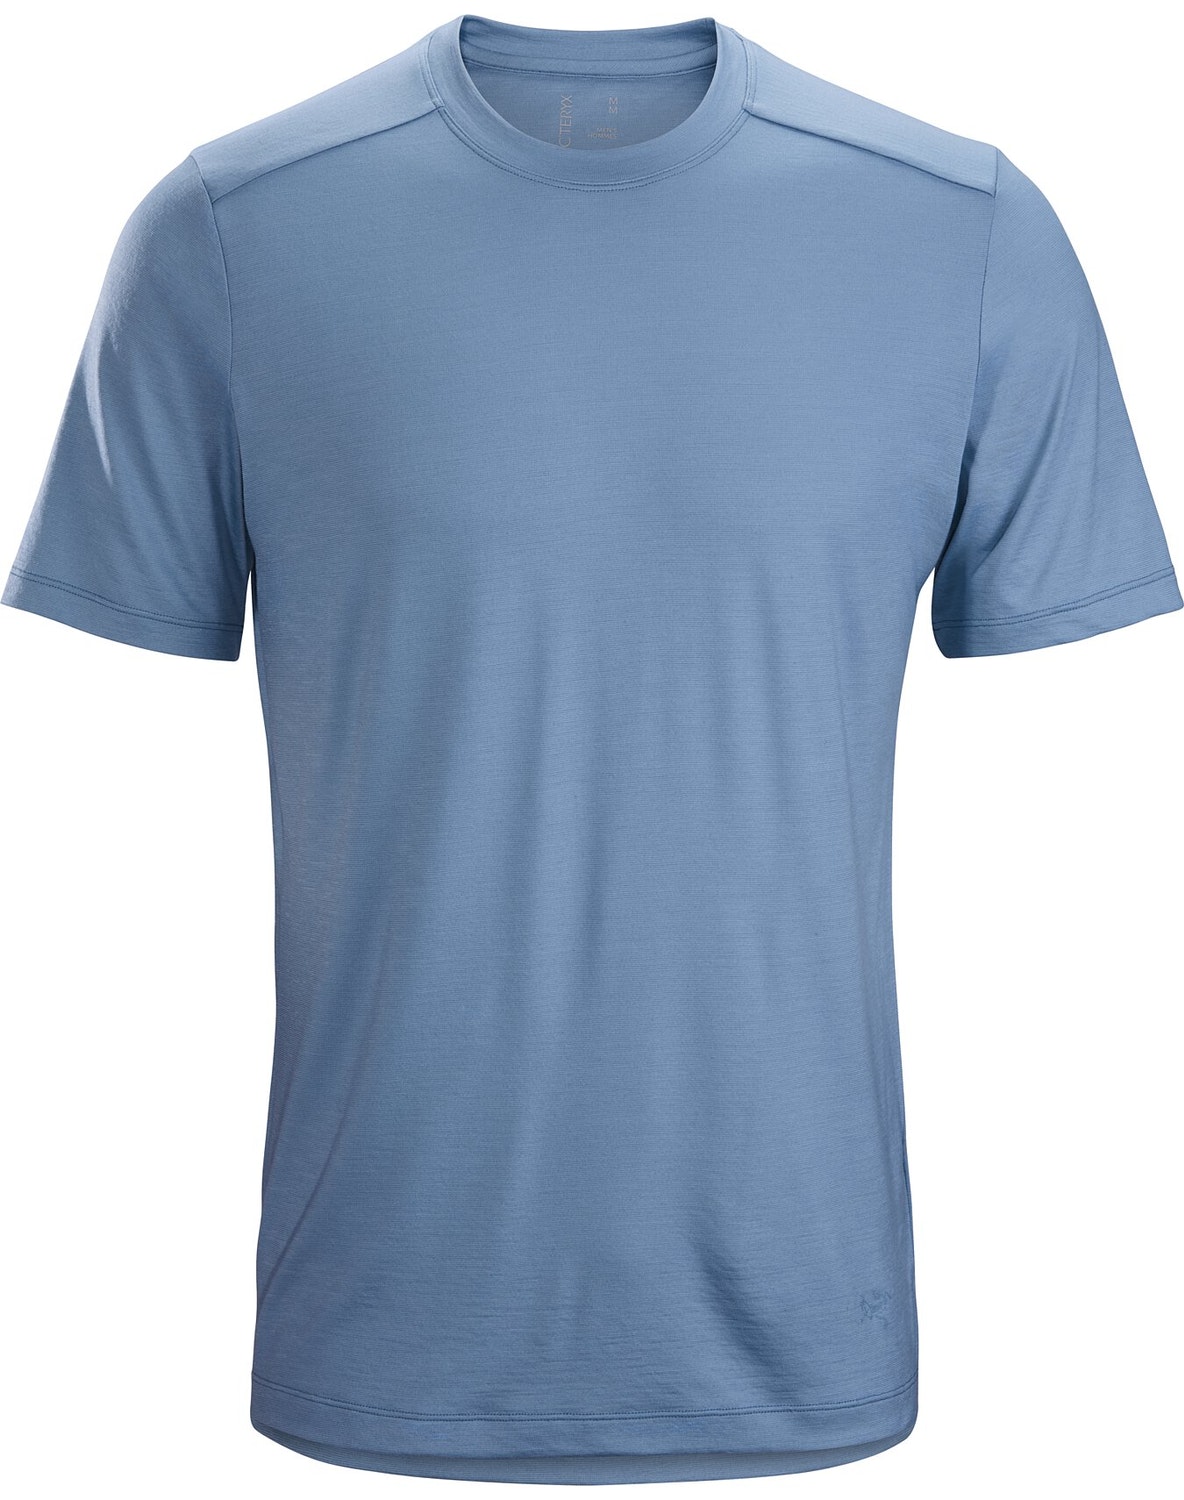 T-shirt Arc'teryx A2B Uomo Blu Chiaro - IT-3759355